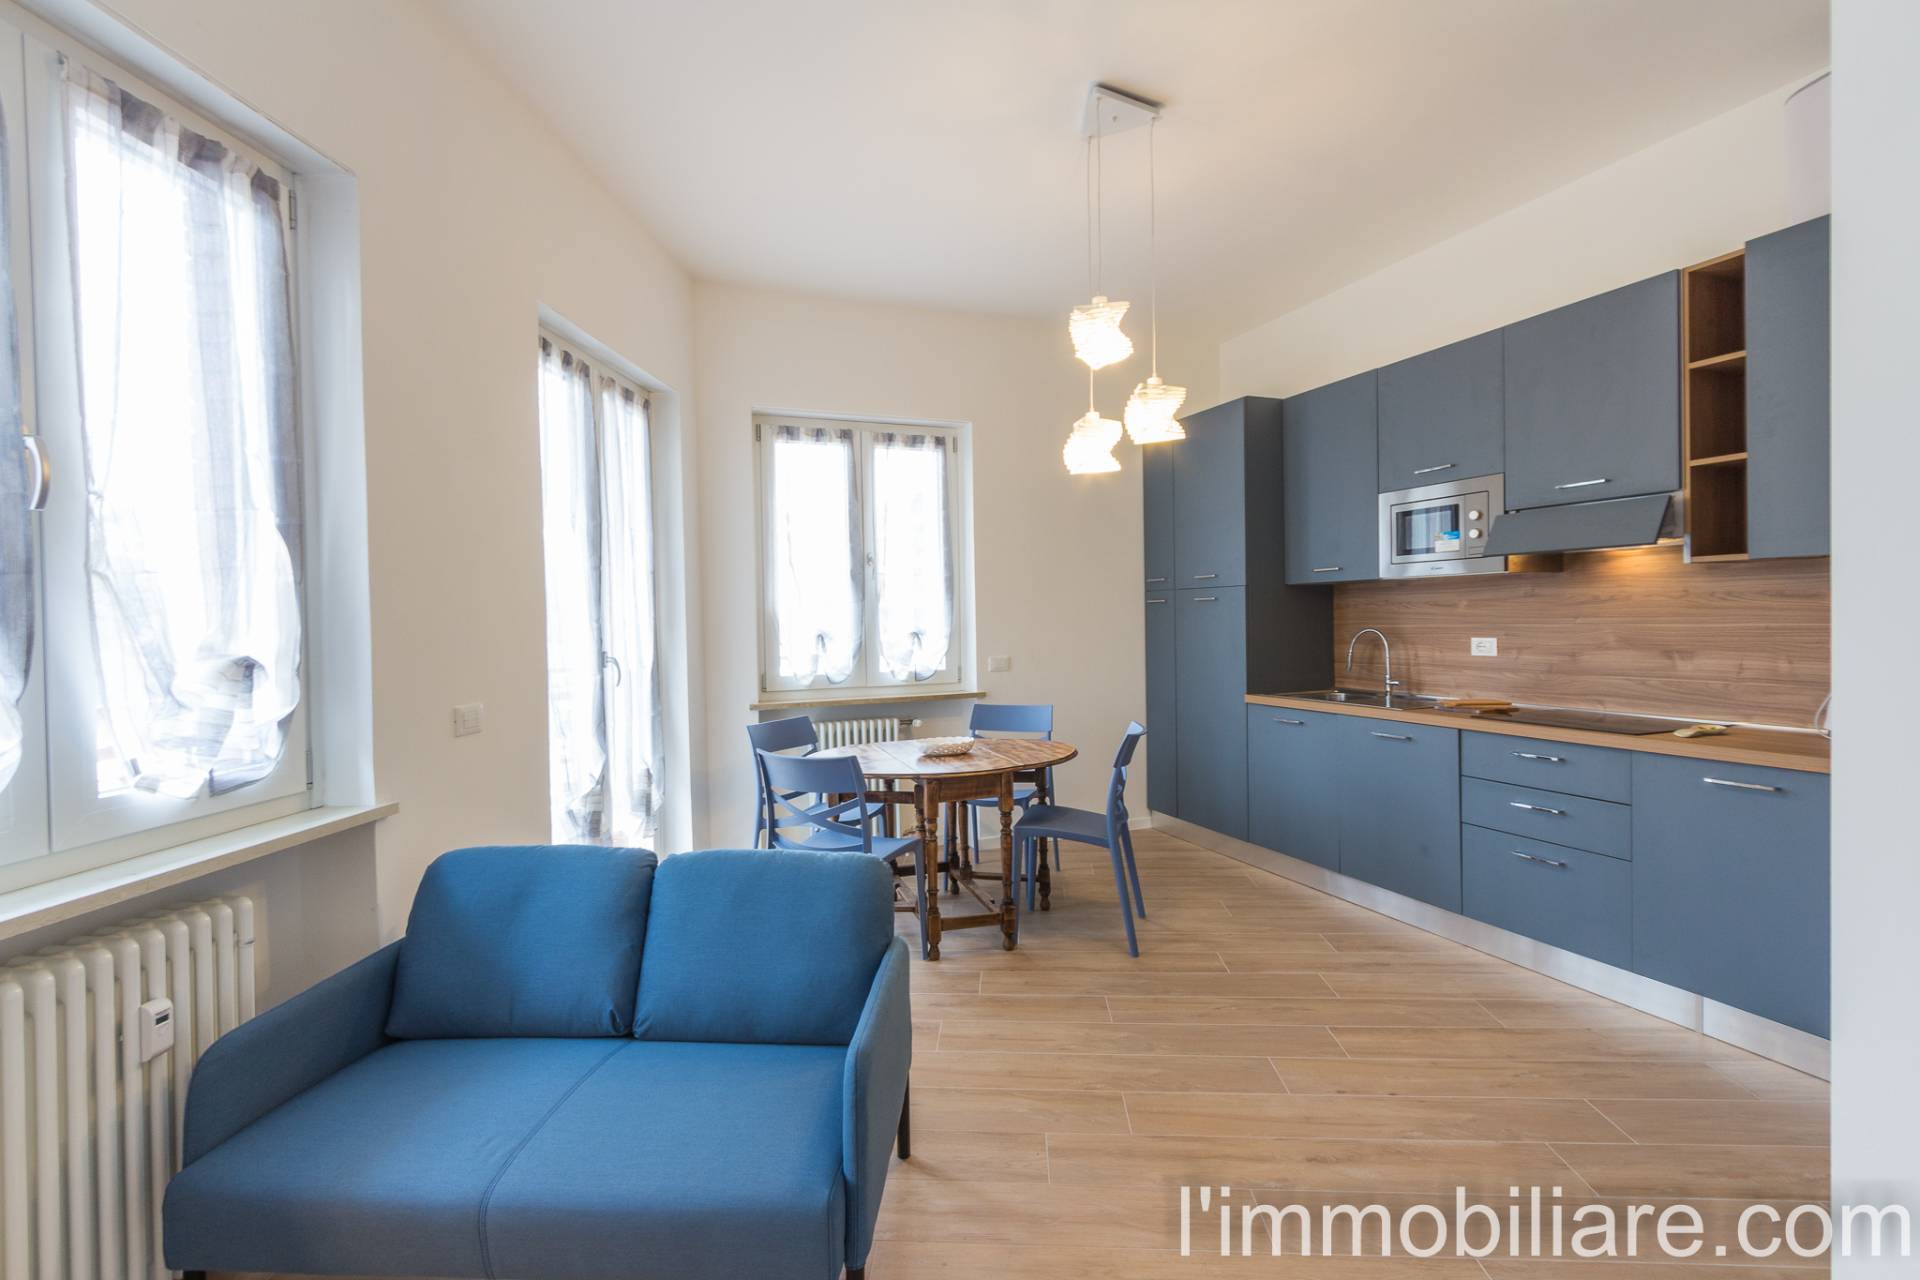 Appartamento in affitto a Verona, 2 locali, zona Località: BorgoTrento, prezzo € 800 | CambioCasa.it